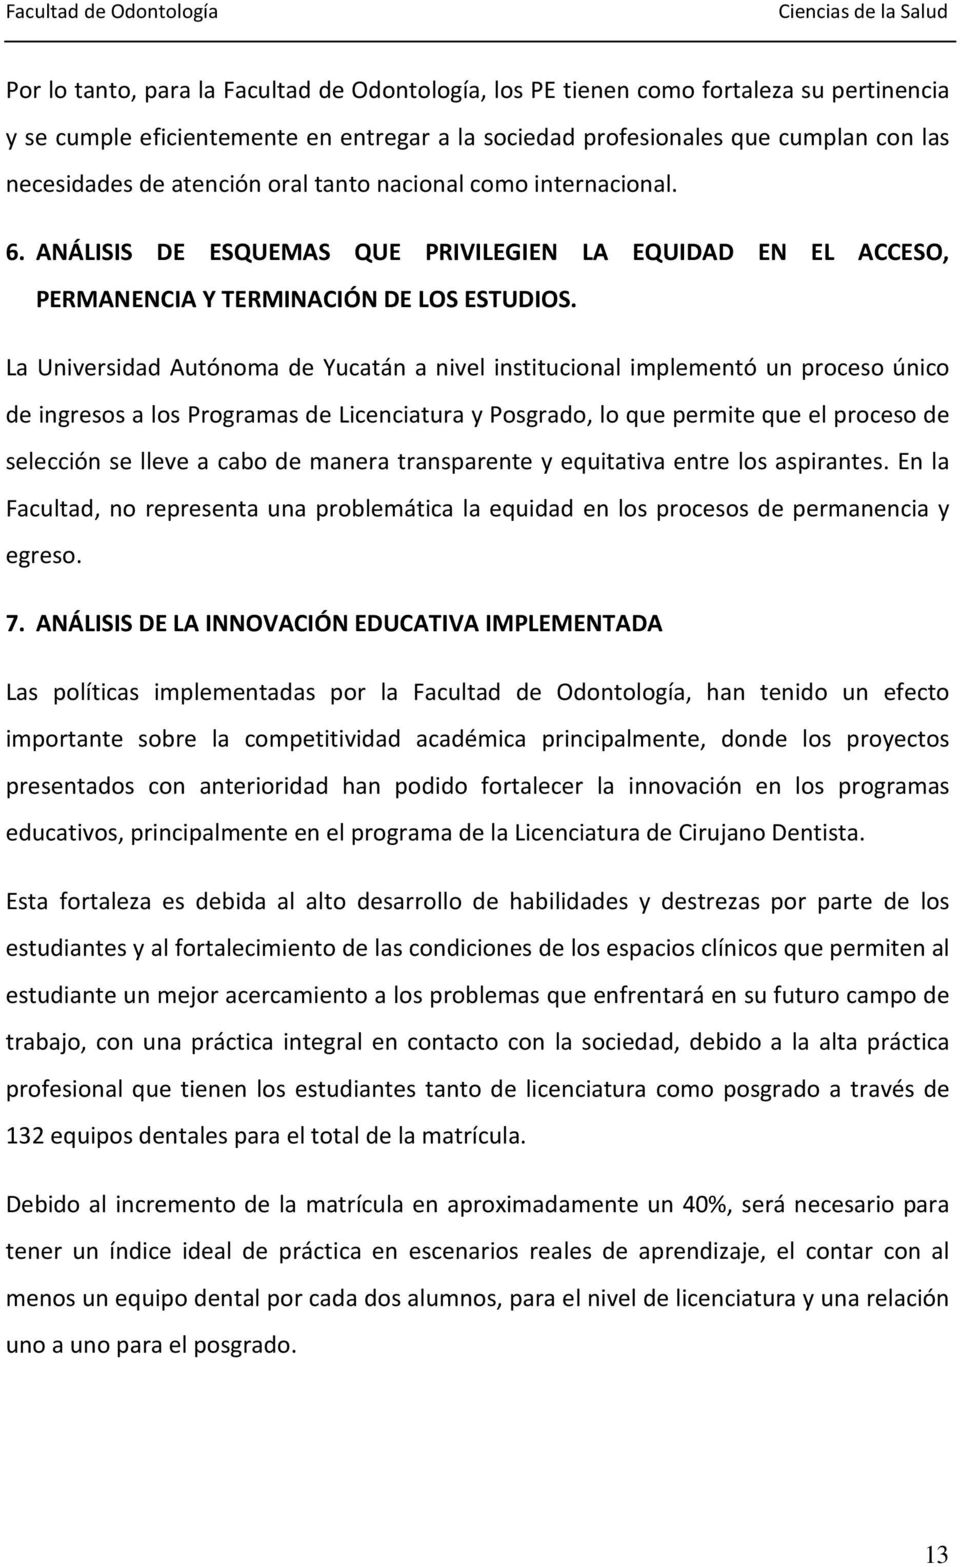 La Universidad Autónoma de Yucatán a nivel institucional implementó un proceso único de ingresos a los Programas de Licenciatura y Posgrado, lo que permite que el proceso de selección se lleve a cabo